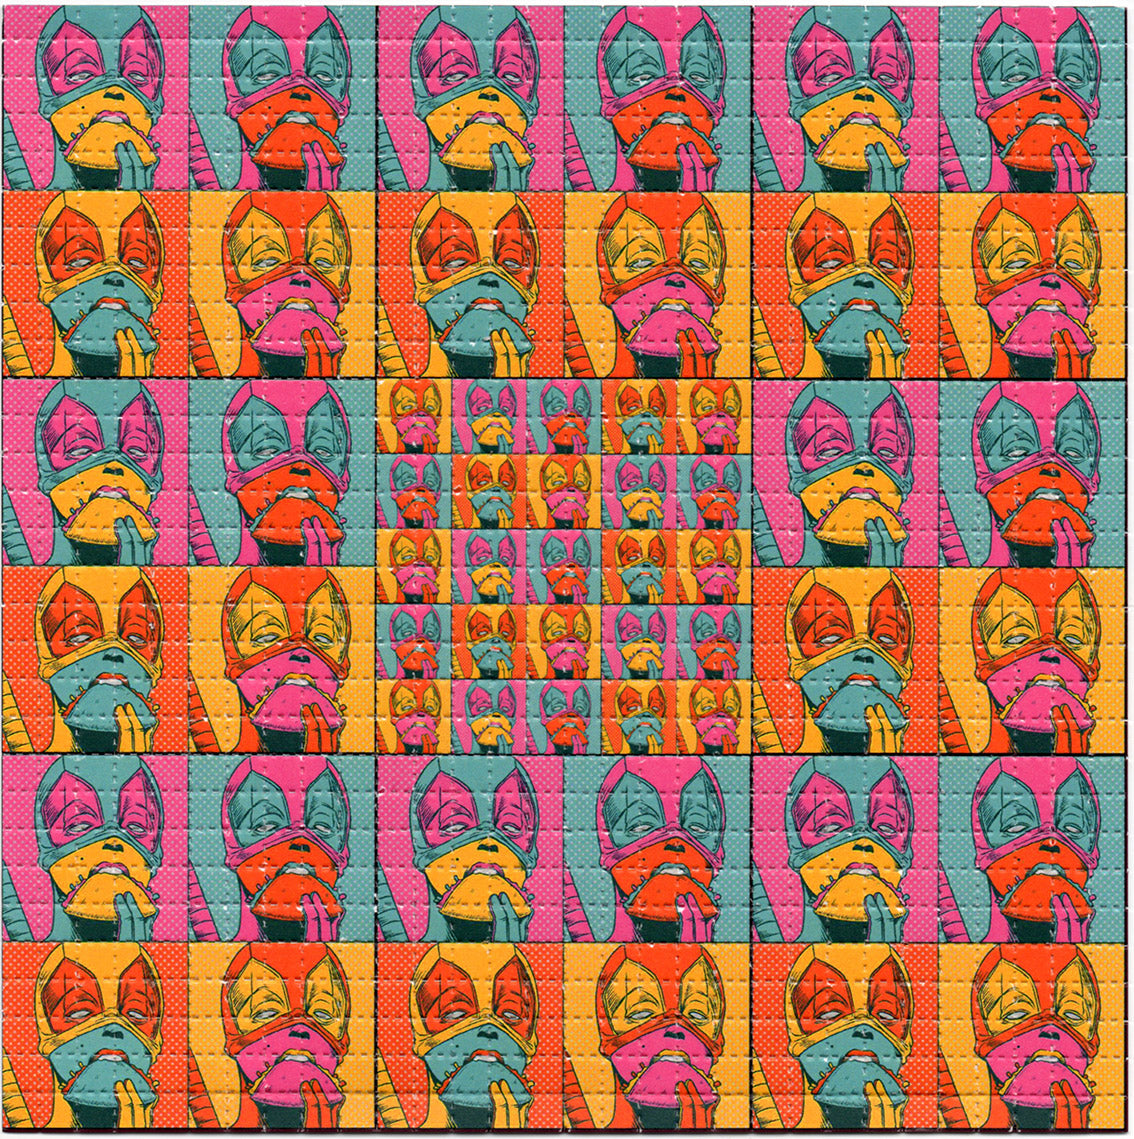 Dead Taco Pool LSD blotter art print